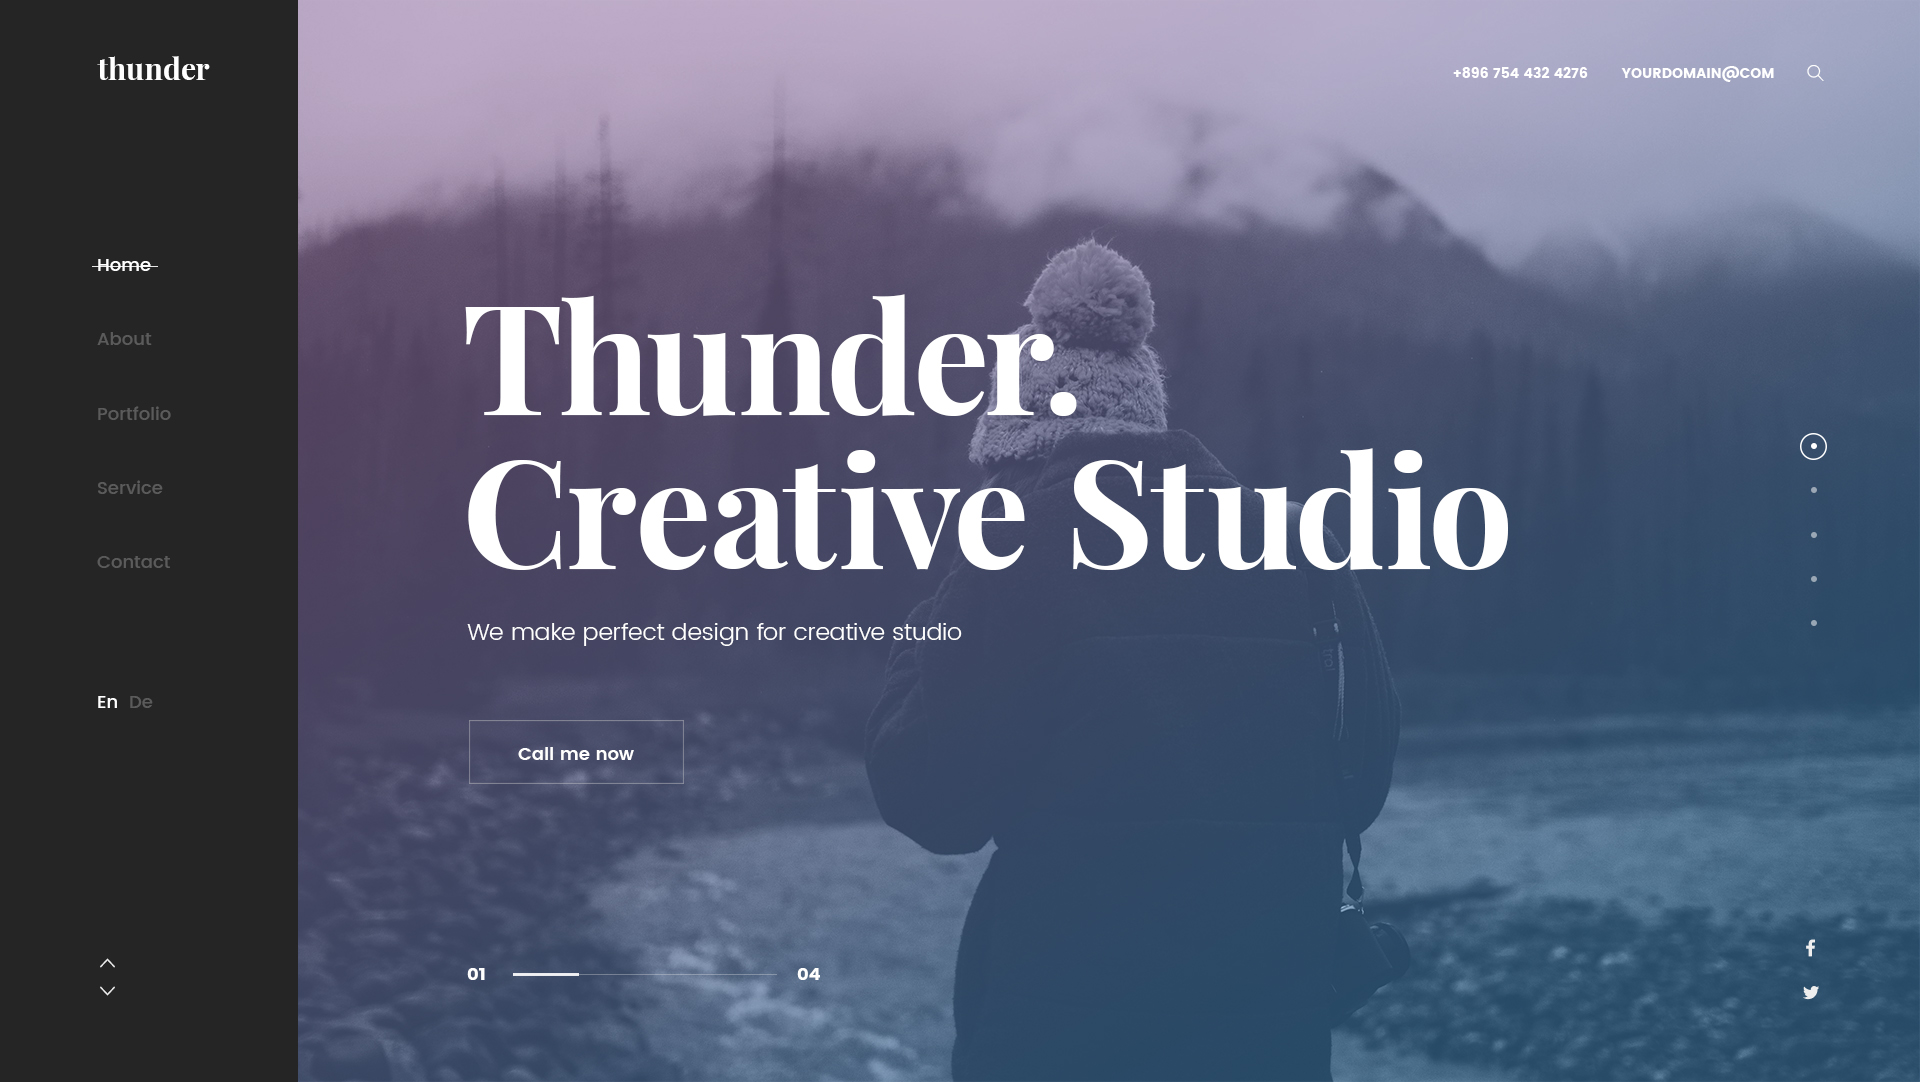 Thunder - Creative PSD Template